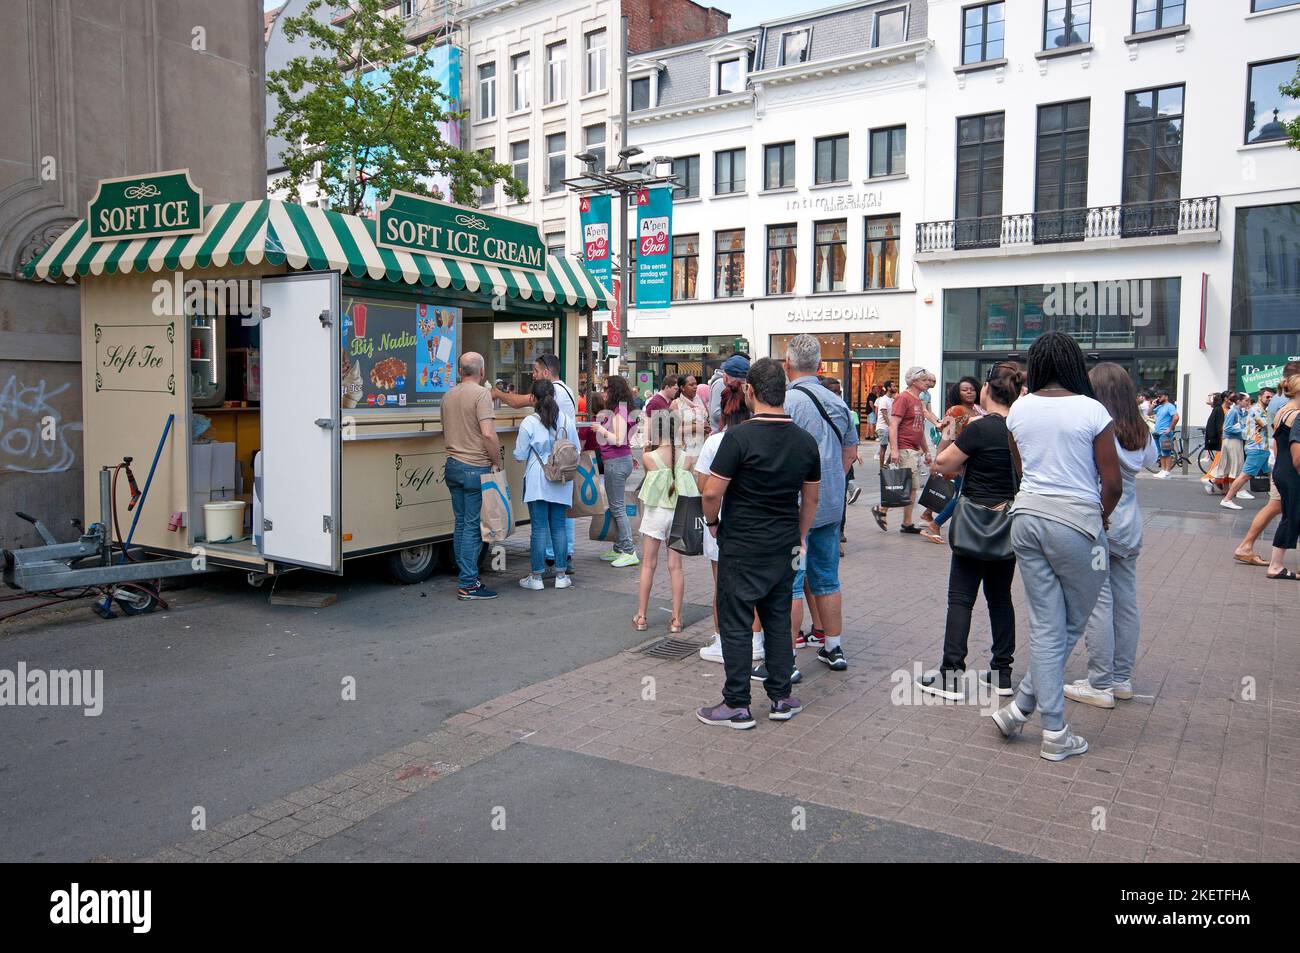 People in line at mobile kiosk selling ice cream, Antwerp (Flanders), Belgium Stock Photo